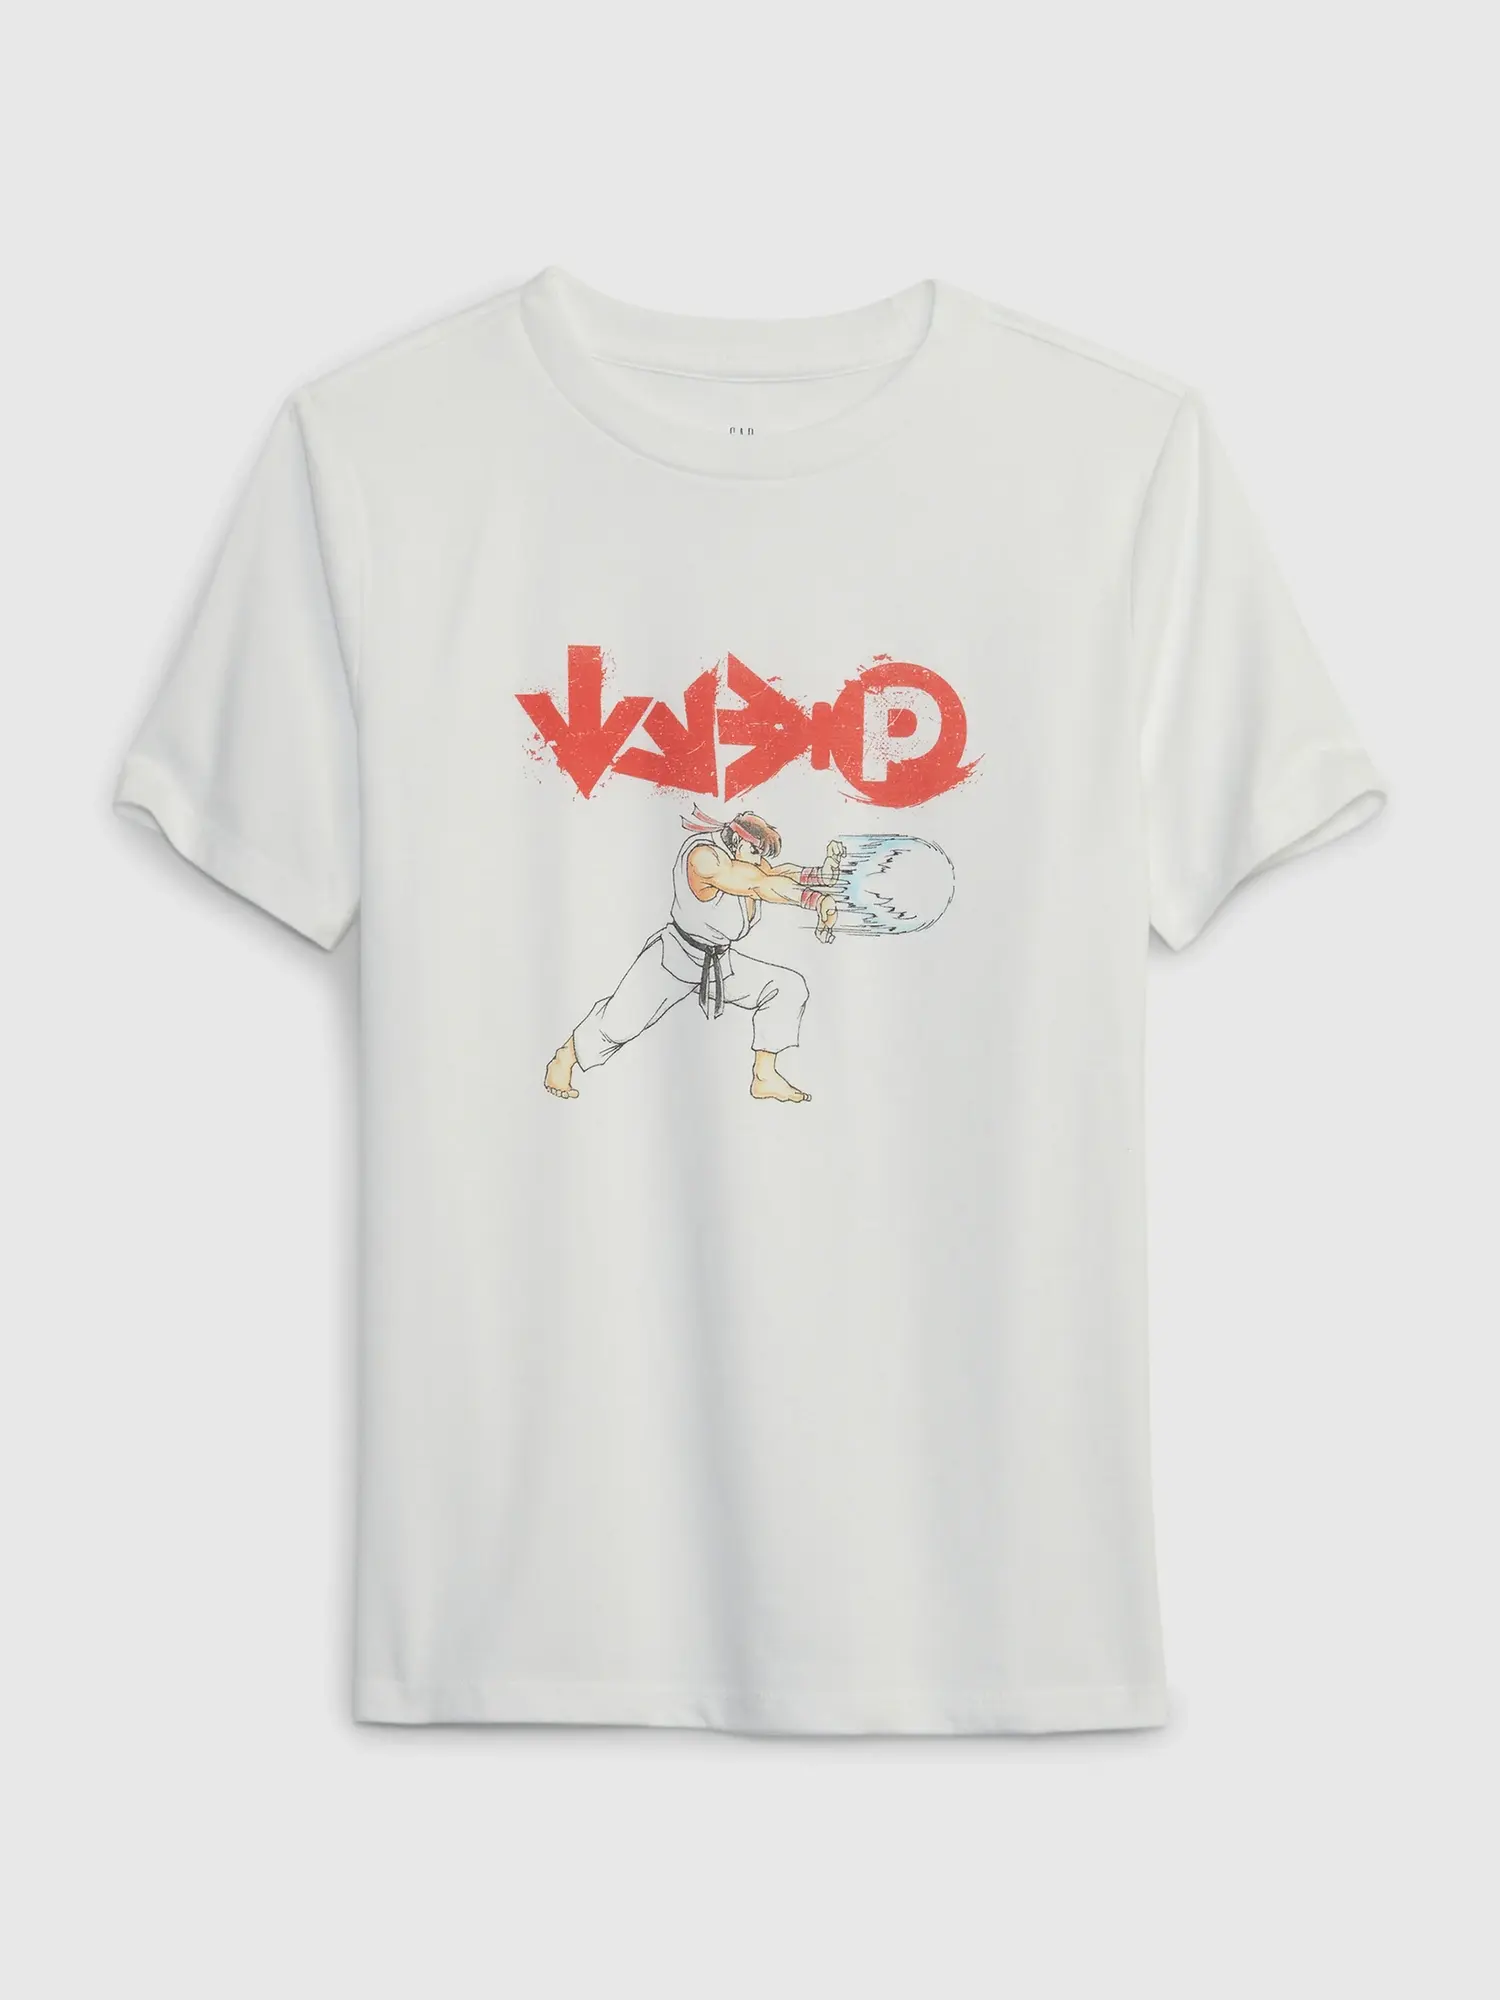 Gap Kids Movie Graphic T-Shirt white. 1